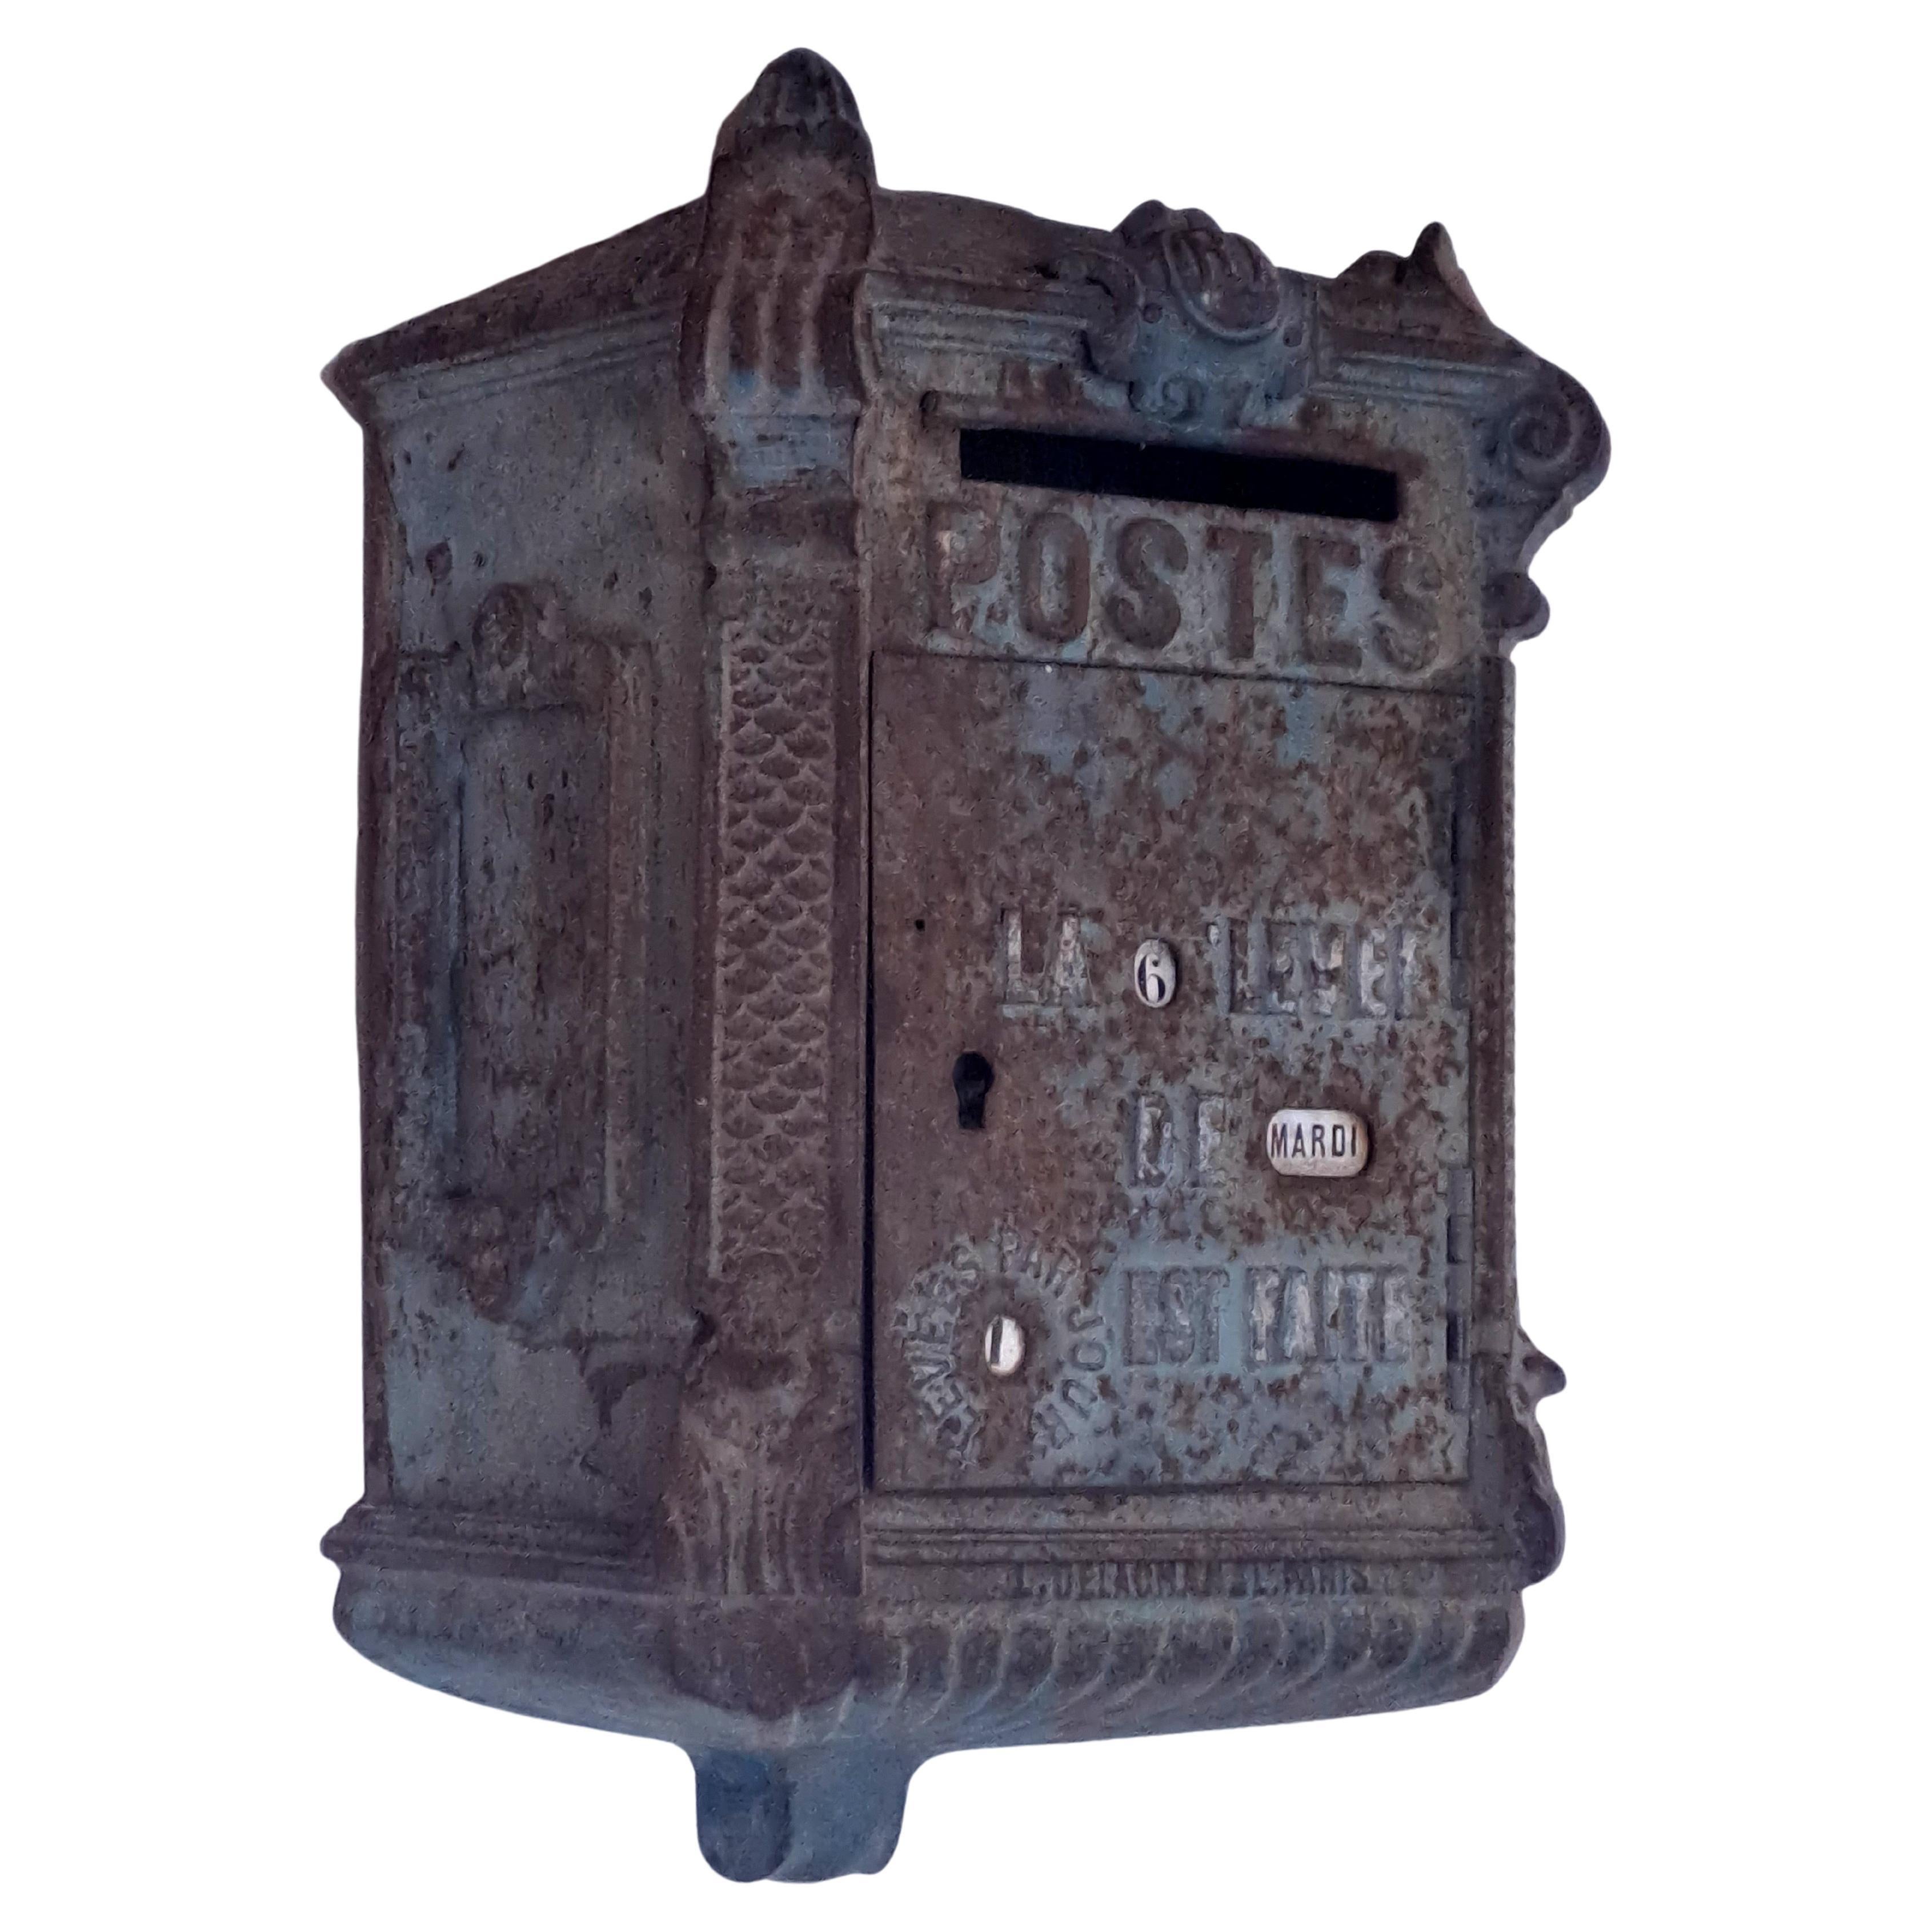 Französische Postamt-E-Mailbox aus Gusseisen – Delachanal-Modell – spätes 19. Jahrhundert